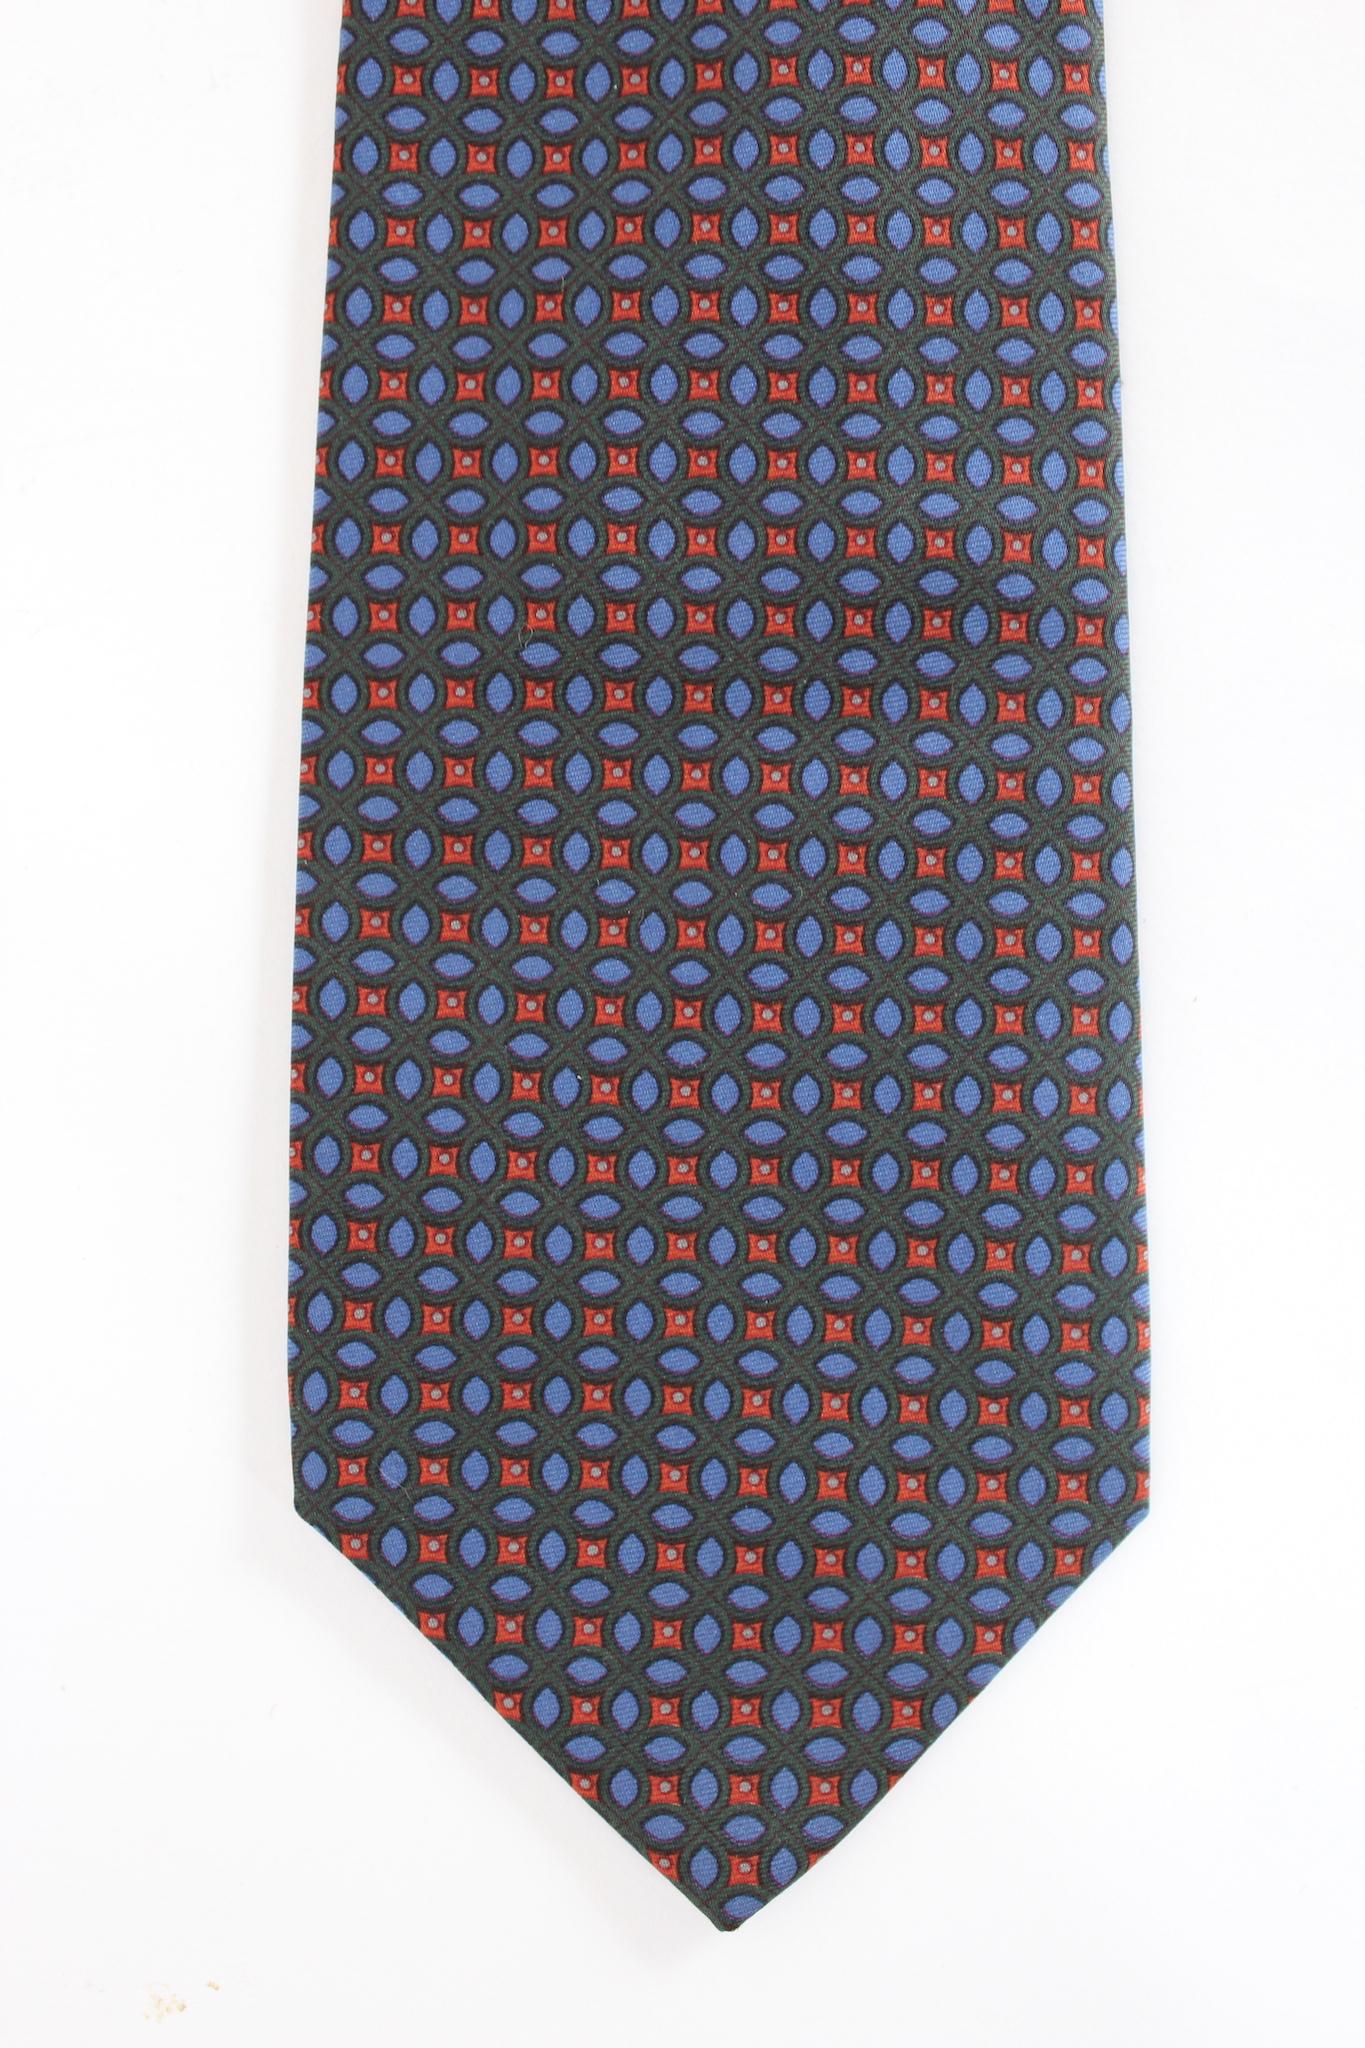 Cravate classique Etro 90s vintage. Couleur verte, bleue et rouge avec des motifs géométriques, tissu 100% soie. Fabriquées en Italie.

Longueur : 140 cm
Largeur : 9 cm